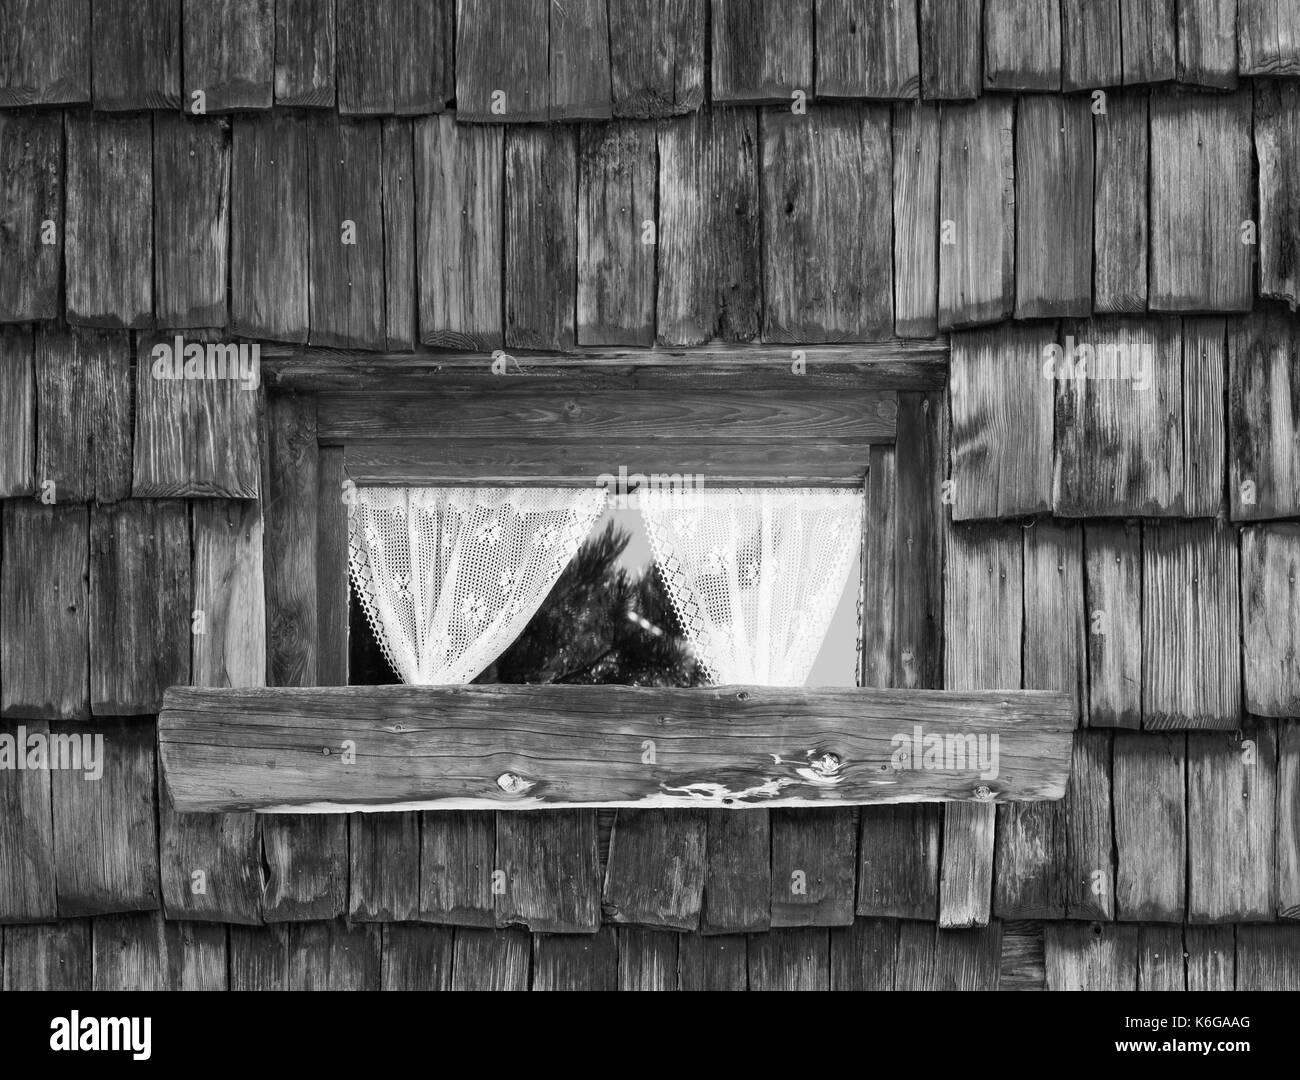 Alte Holz- Fenster mit Gardinen. Windows eine Wand Textur Hintergrund. Bild  in Schwarz und Weiß Stockfotografie - Alamy